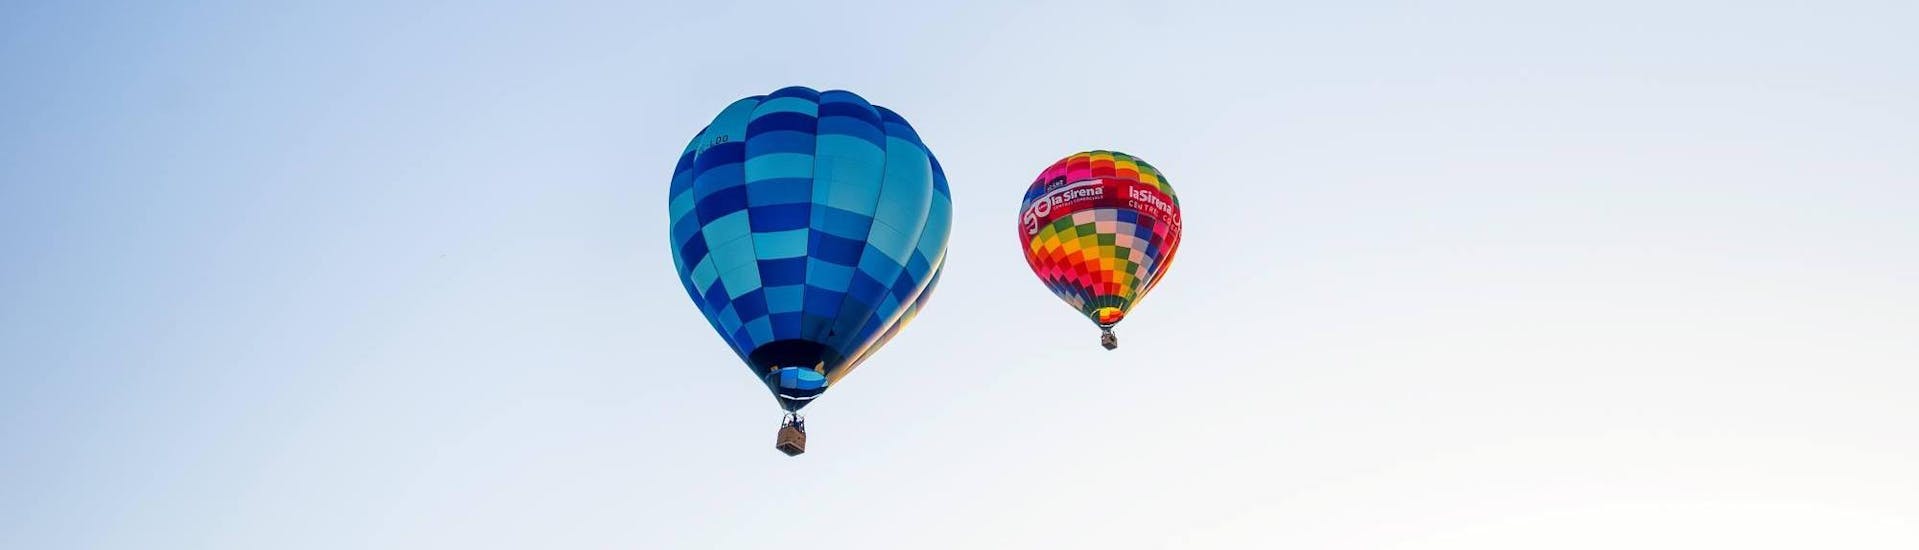 Dos globos aerostáticos de Ibiza en Globo flotan varios metros en el cielo.